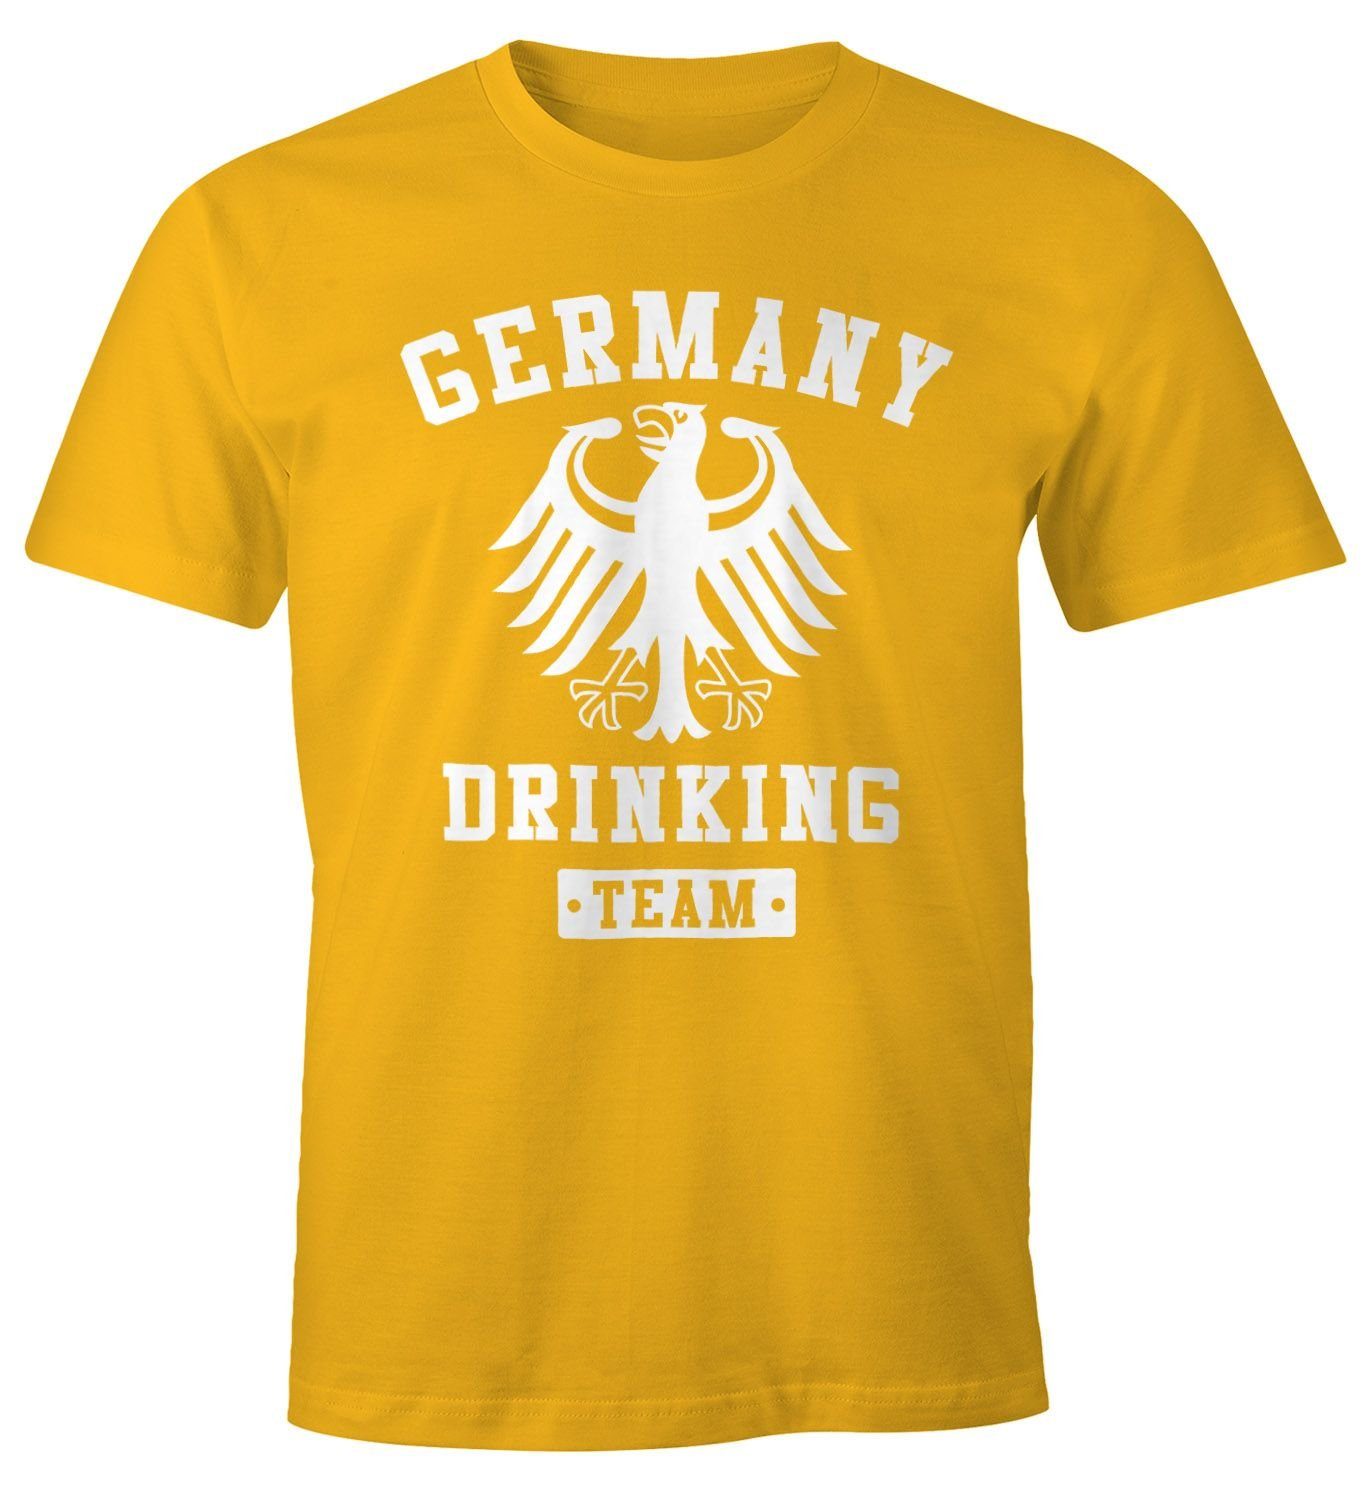 MoonWorks Print-Shirt Deutschland Herren T-Shirt Germany Drinking Team Bier Adler Fun-Shirt Moonworks® mit Print gelb | T-Shirts